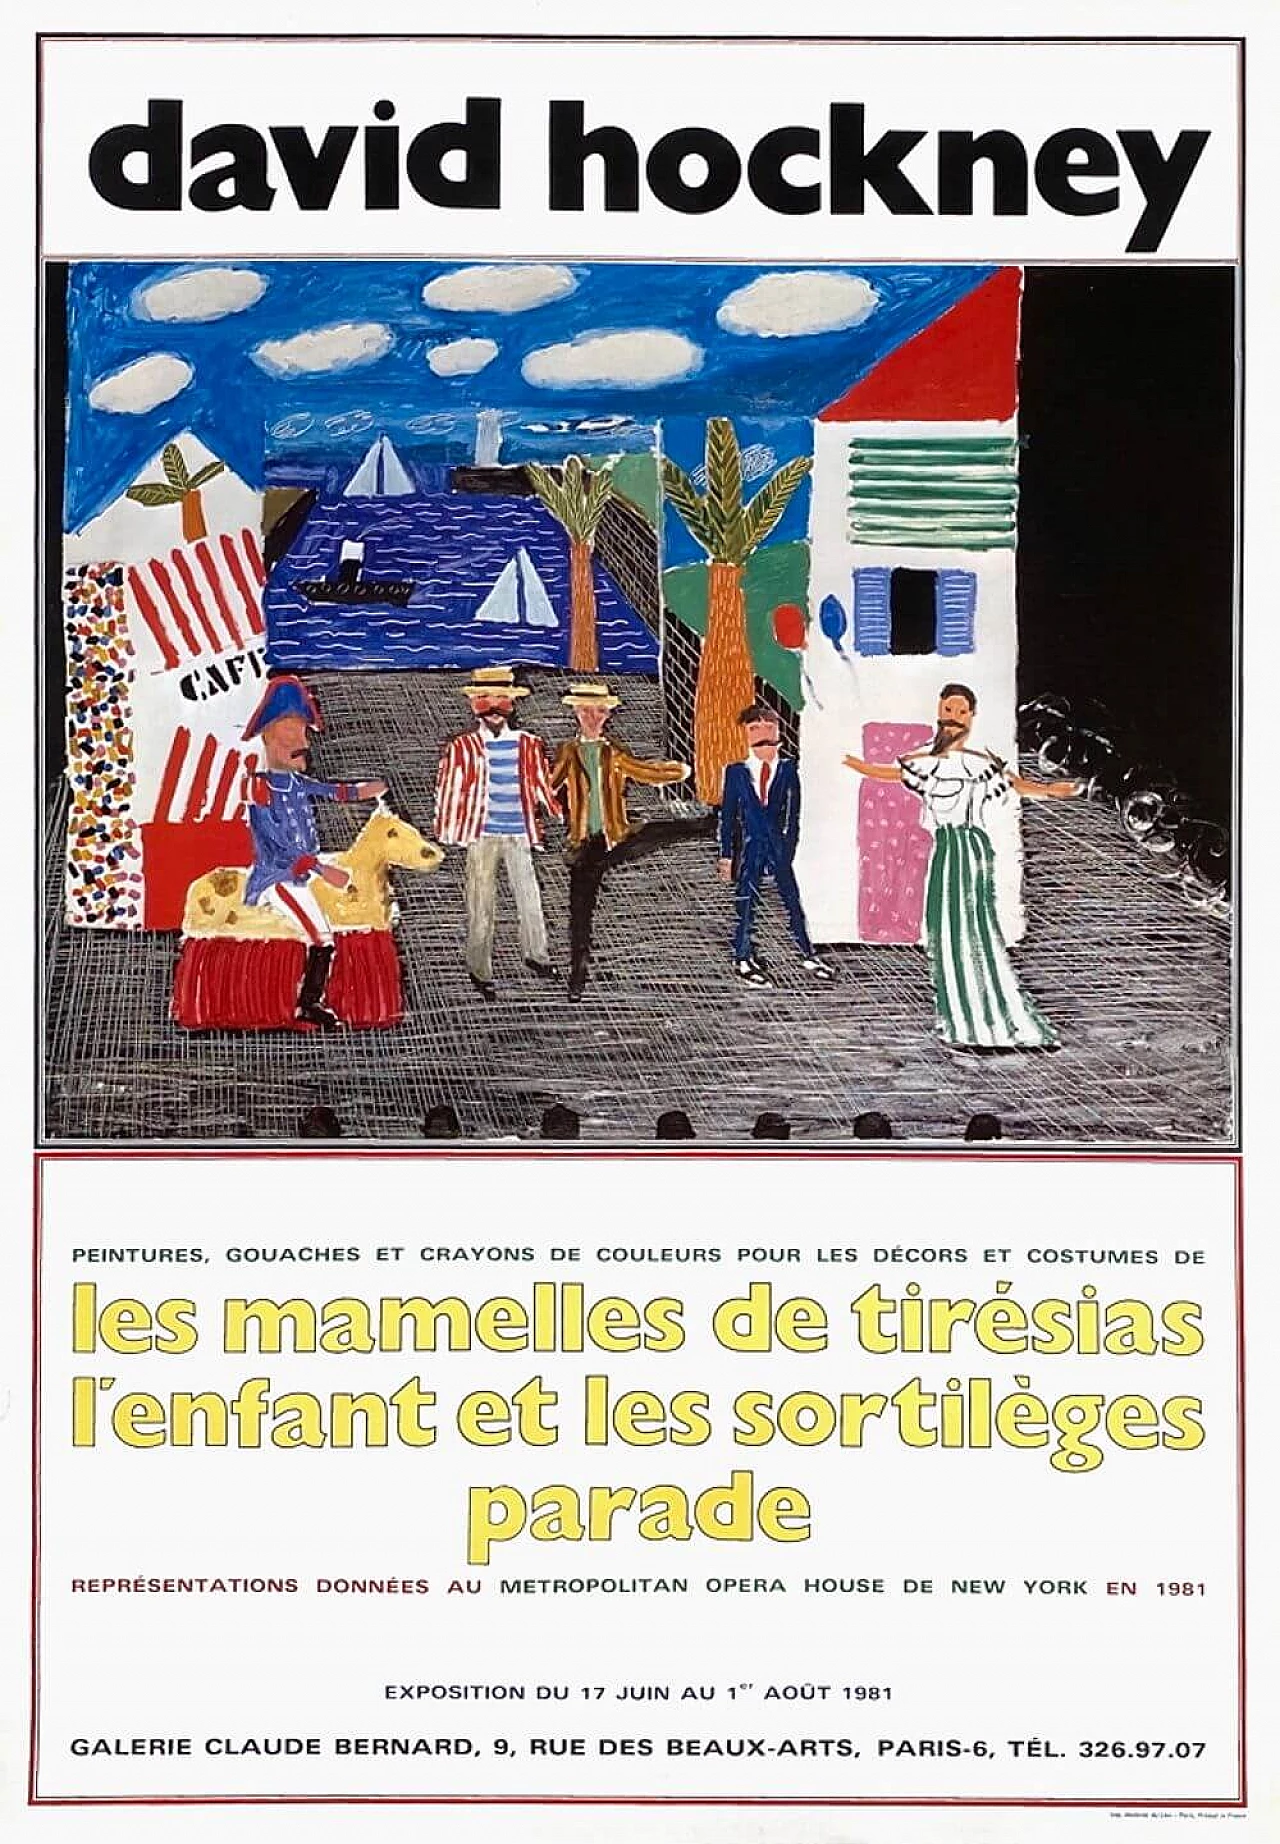 David Hockney Exhibition Poster, 1981 1219447